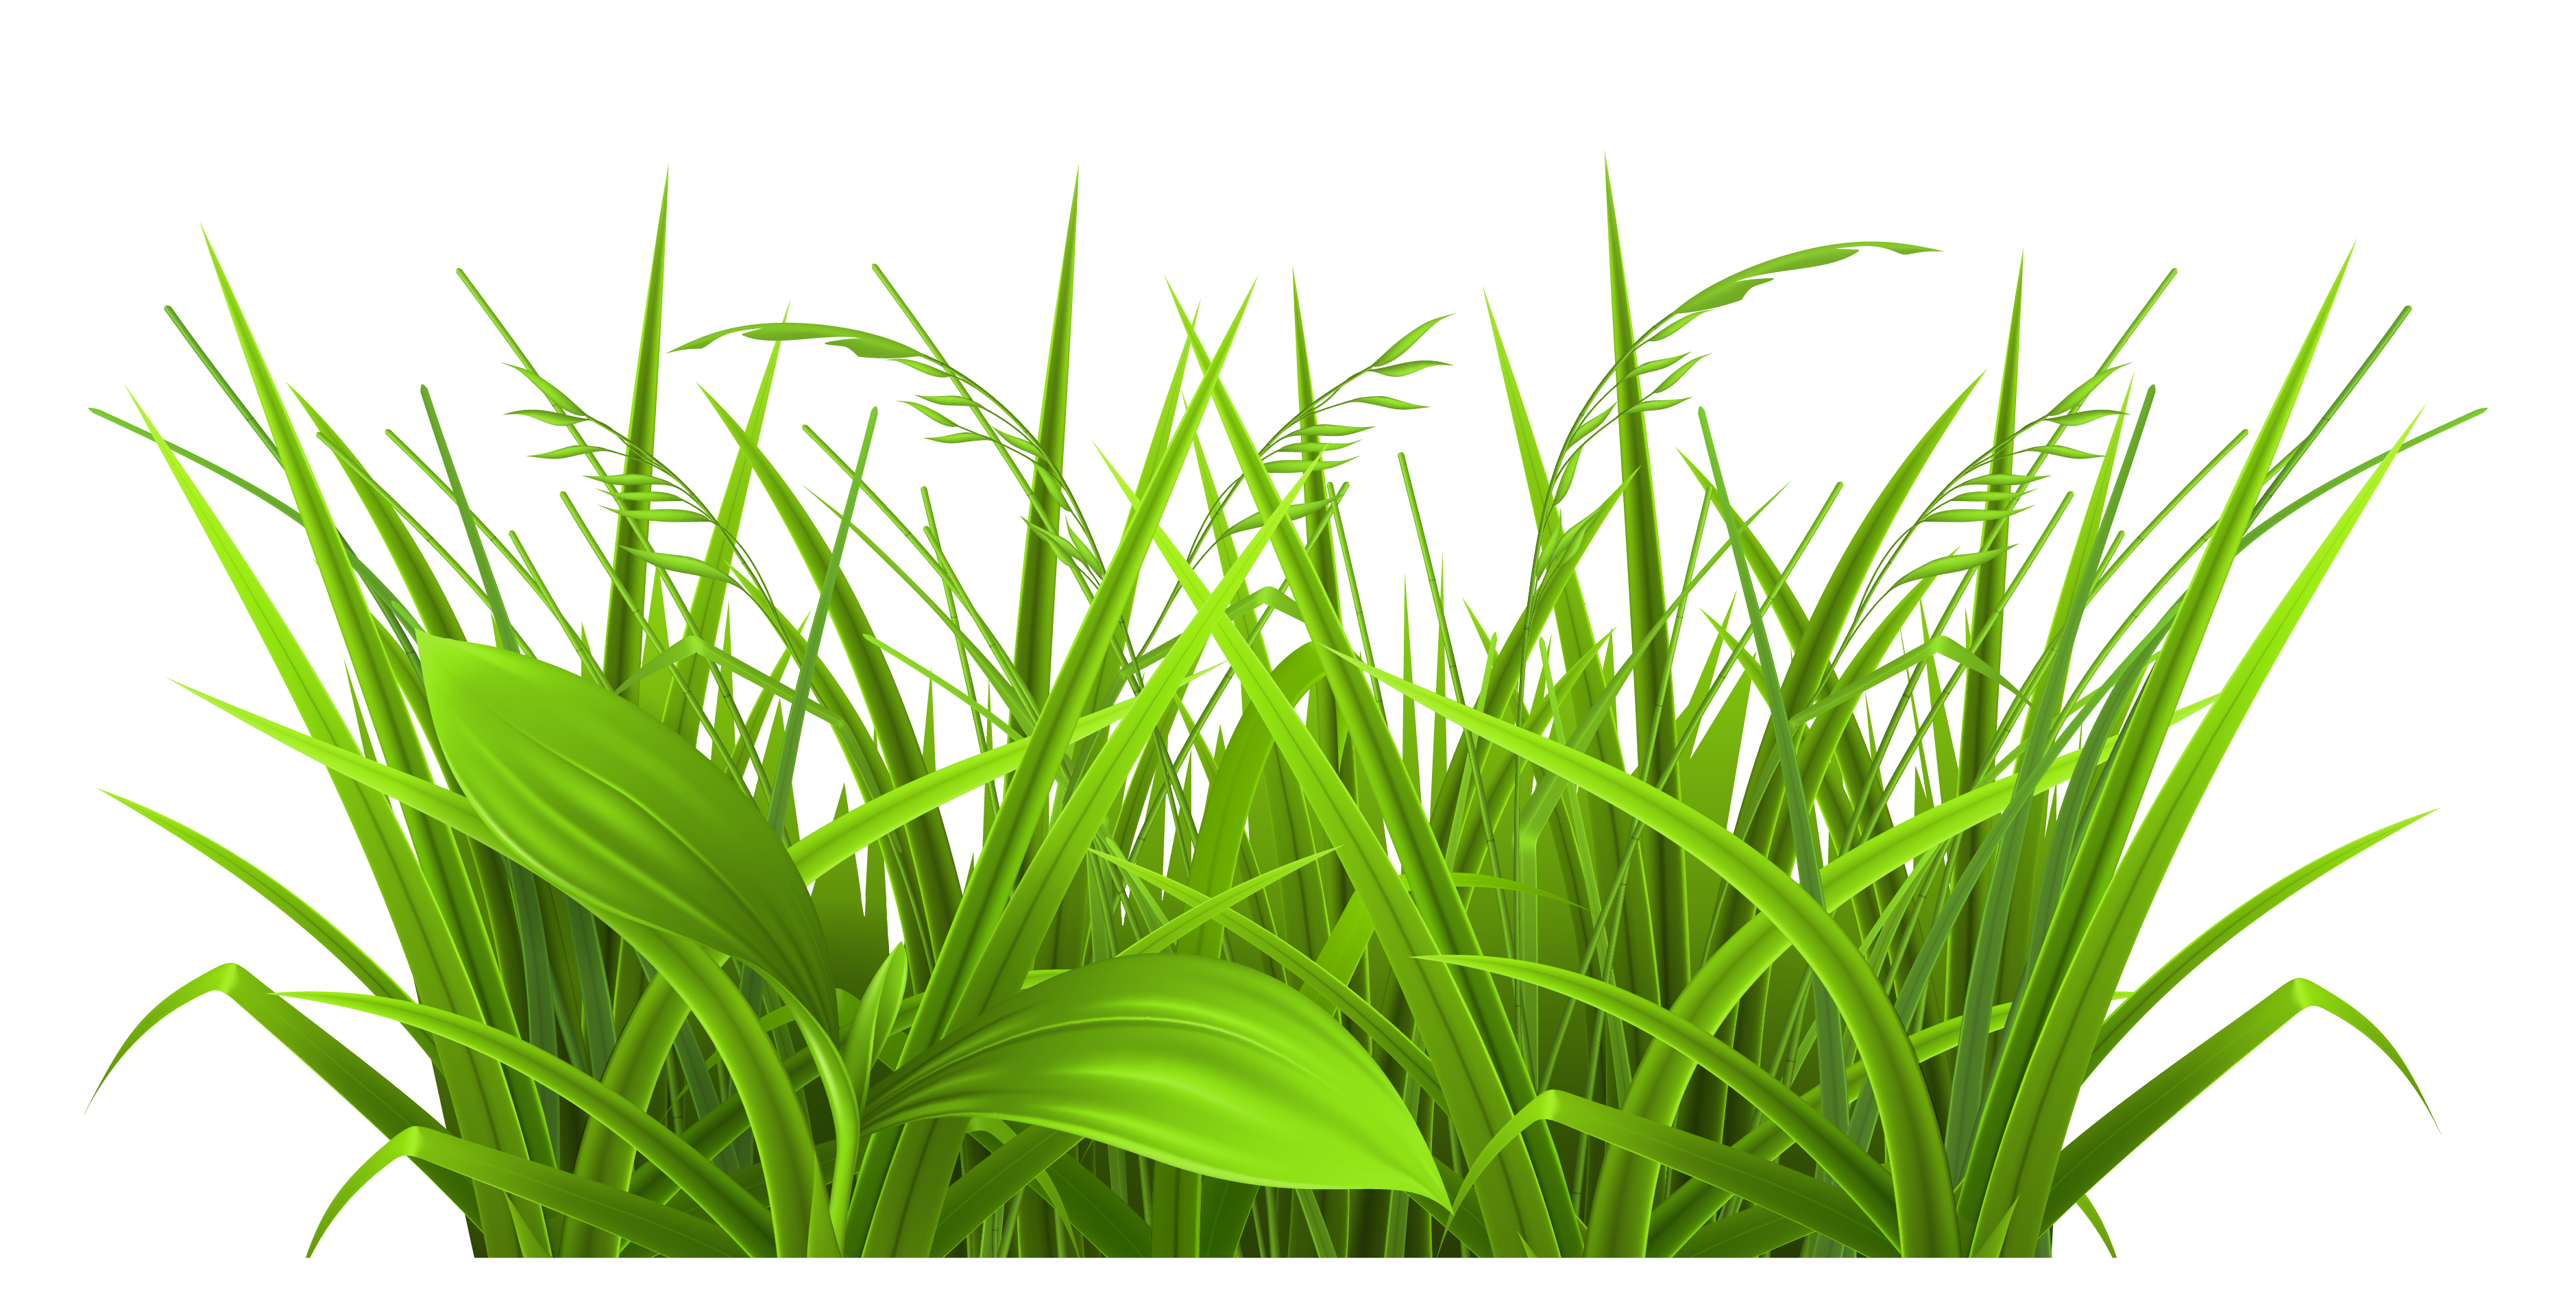 Prairie or field wheat grass clipart